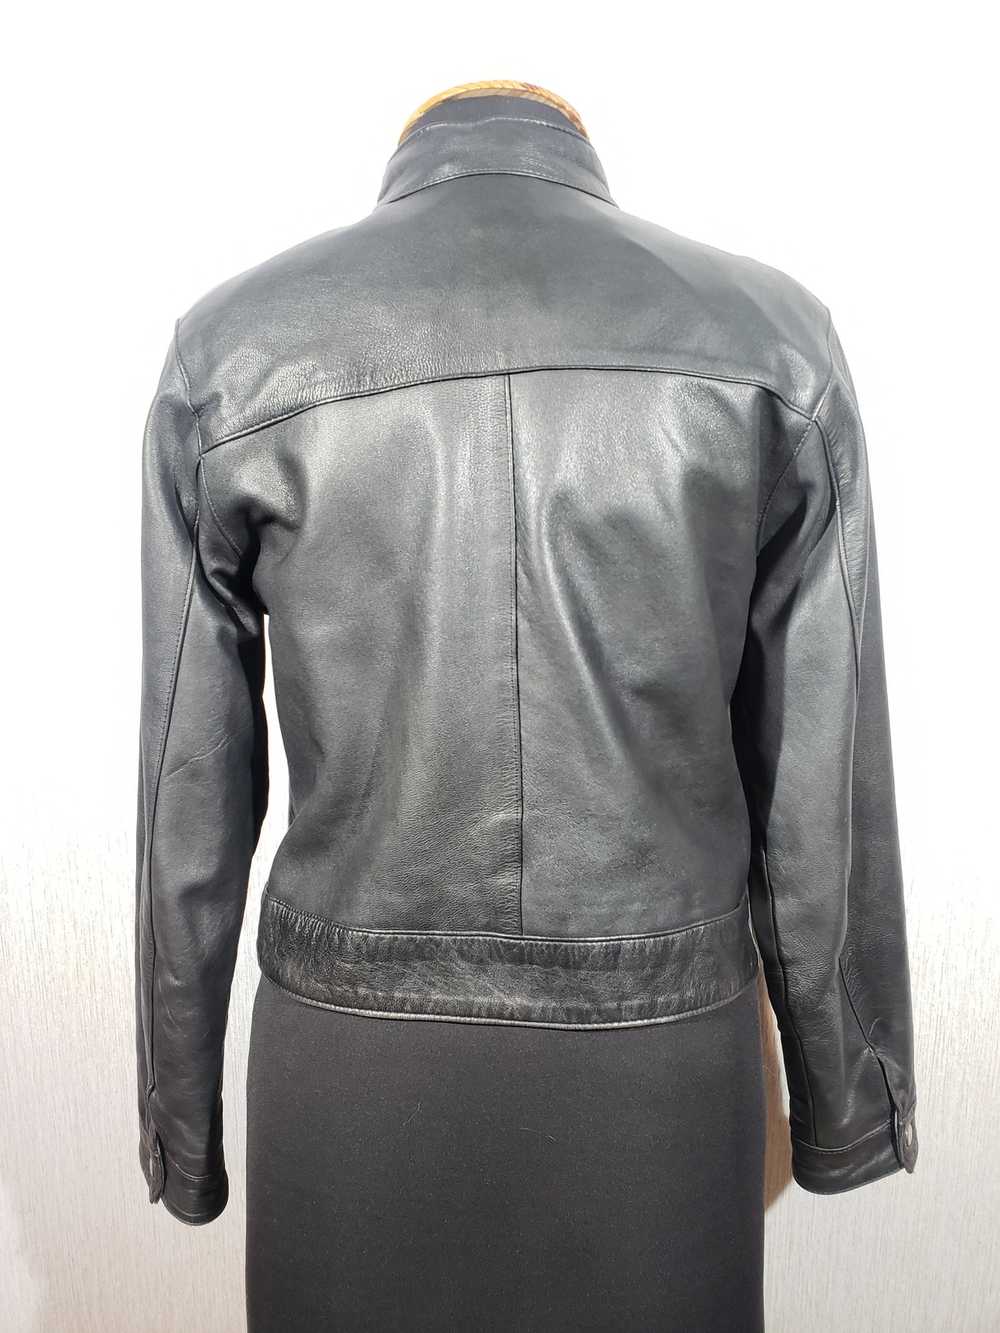 Designer × Leather Jacket Black women's sports ja… - image 3